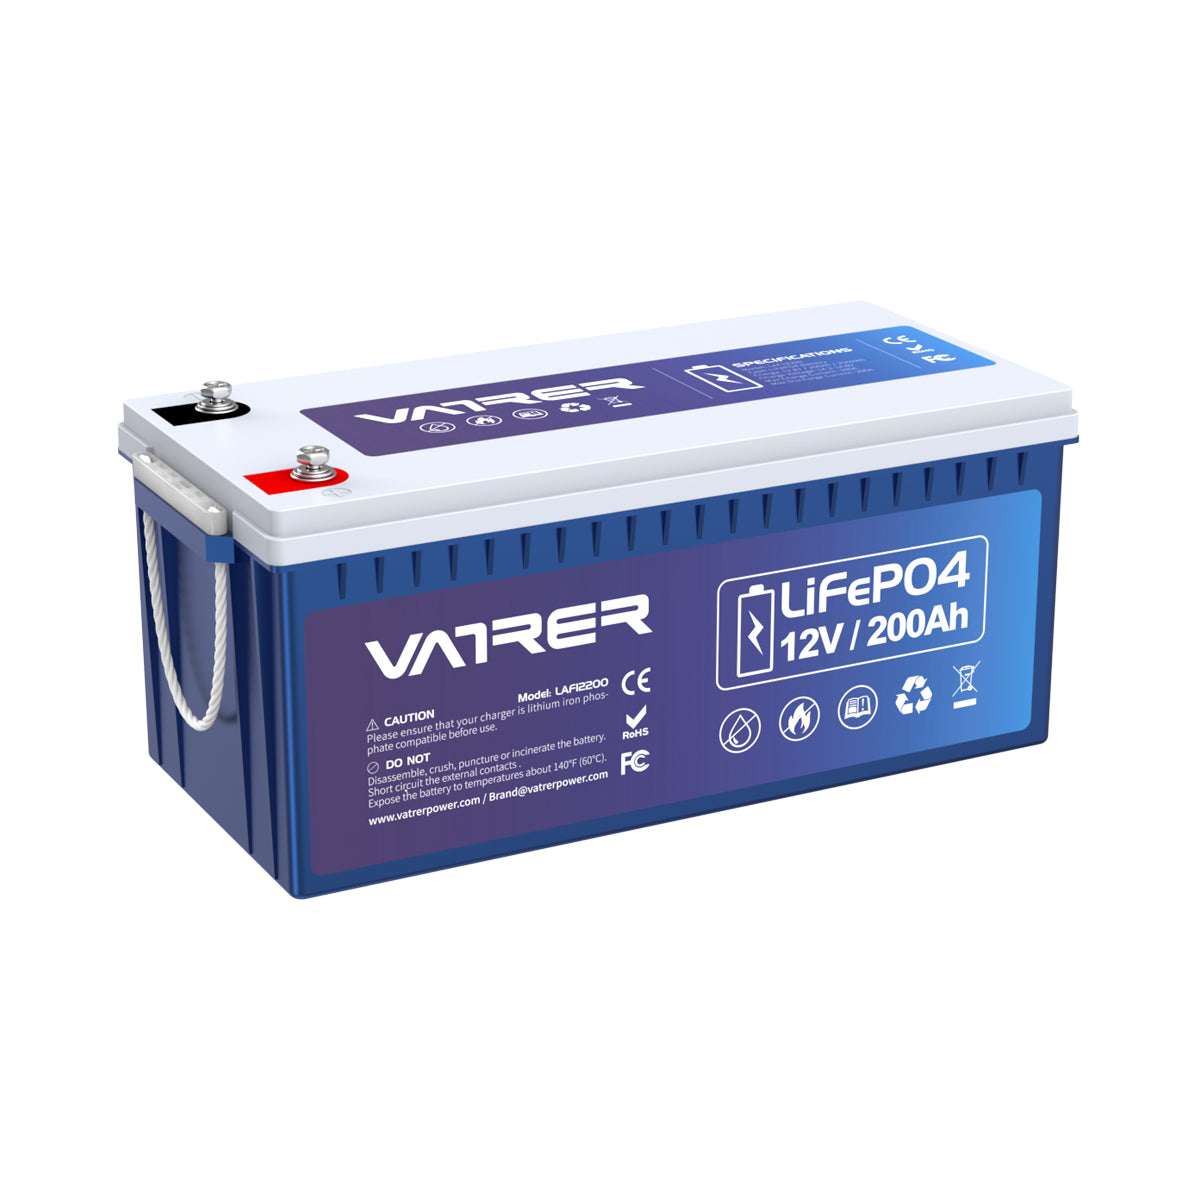 12V 200Ah Plus LiFePO4 リチウム電池、内蔵 200A BMS & 低温カットオフ 11